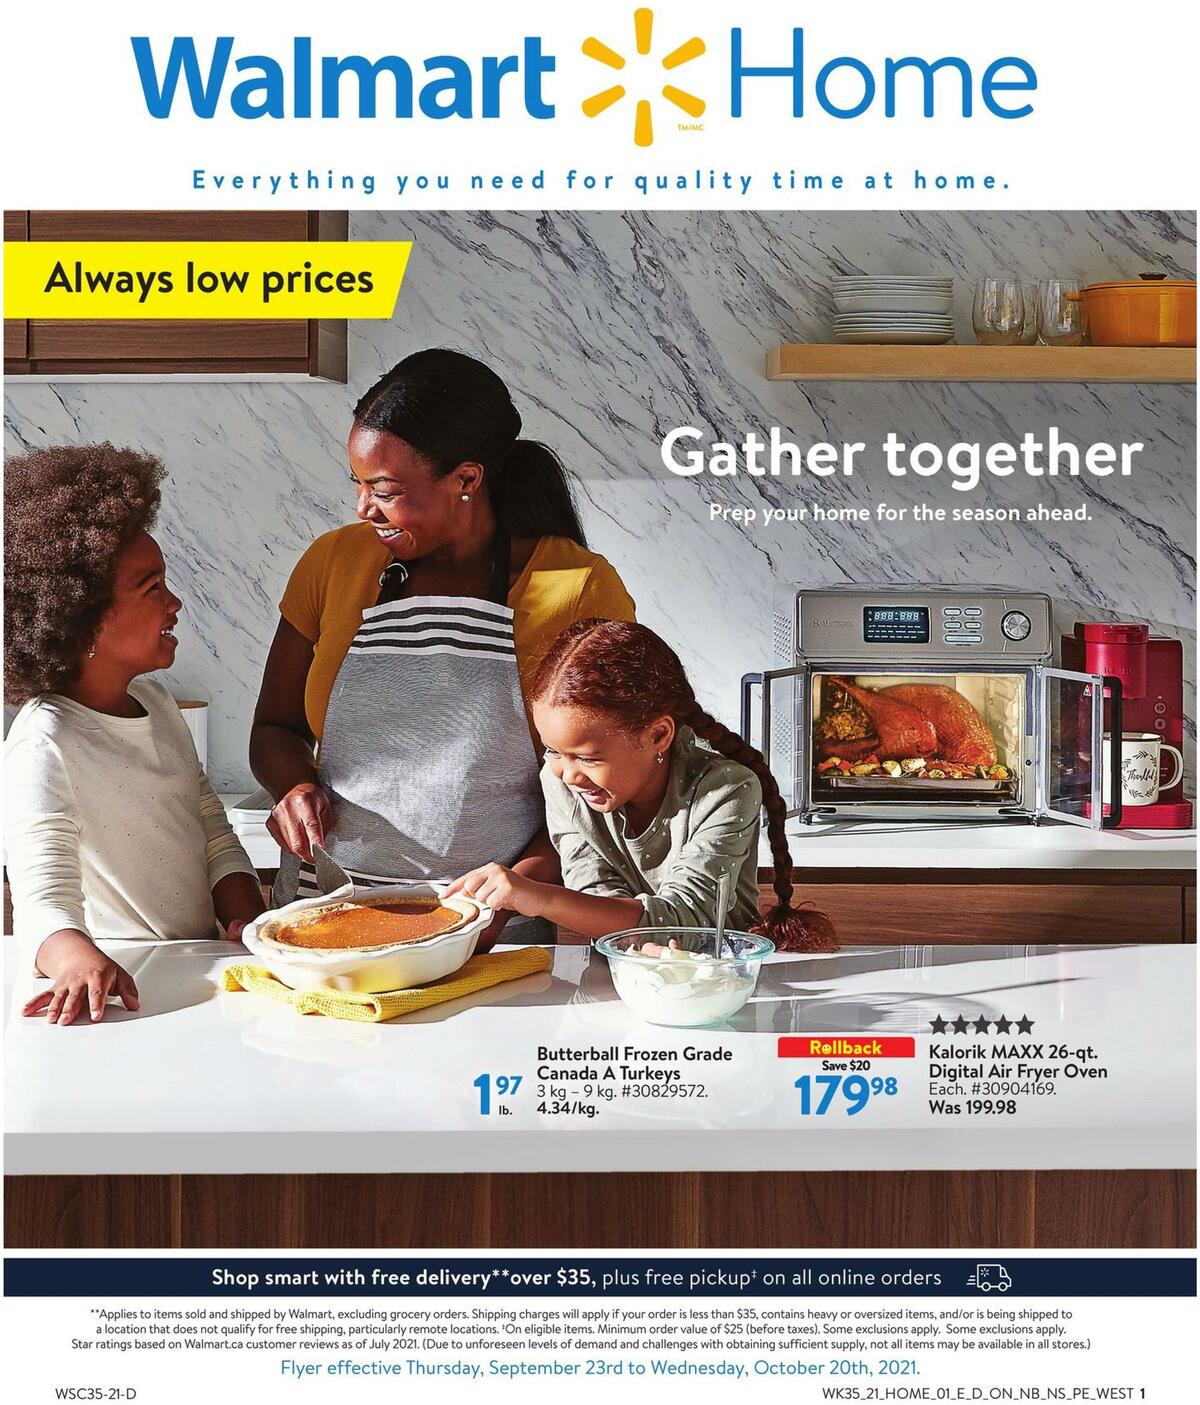 Walmart Fall Home Digest Flyer from September 23